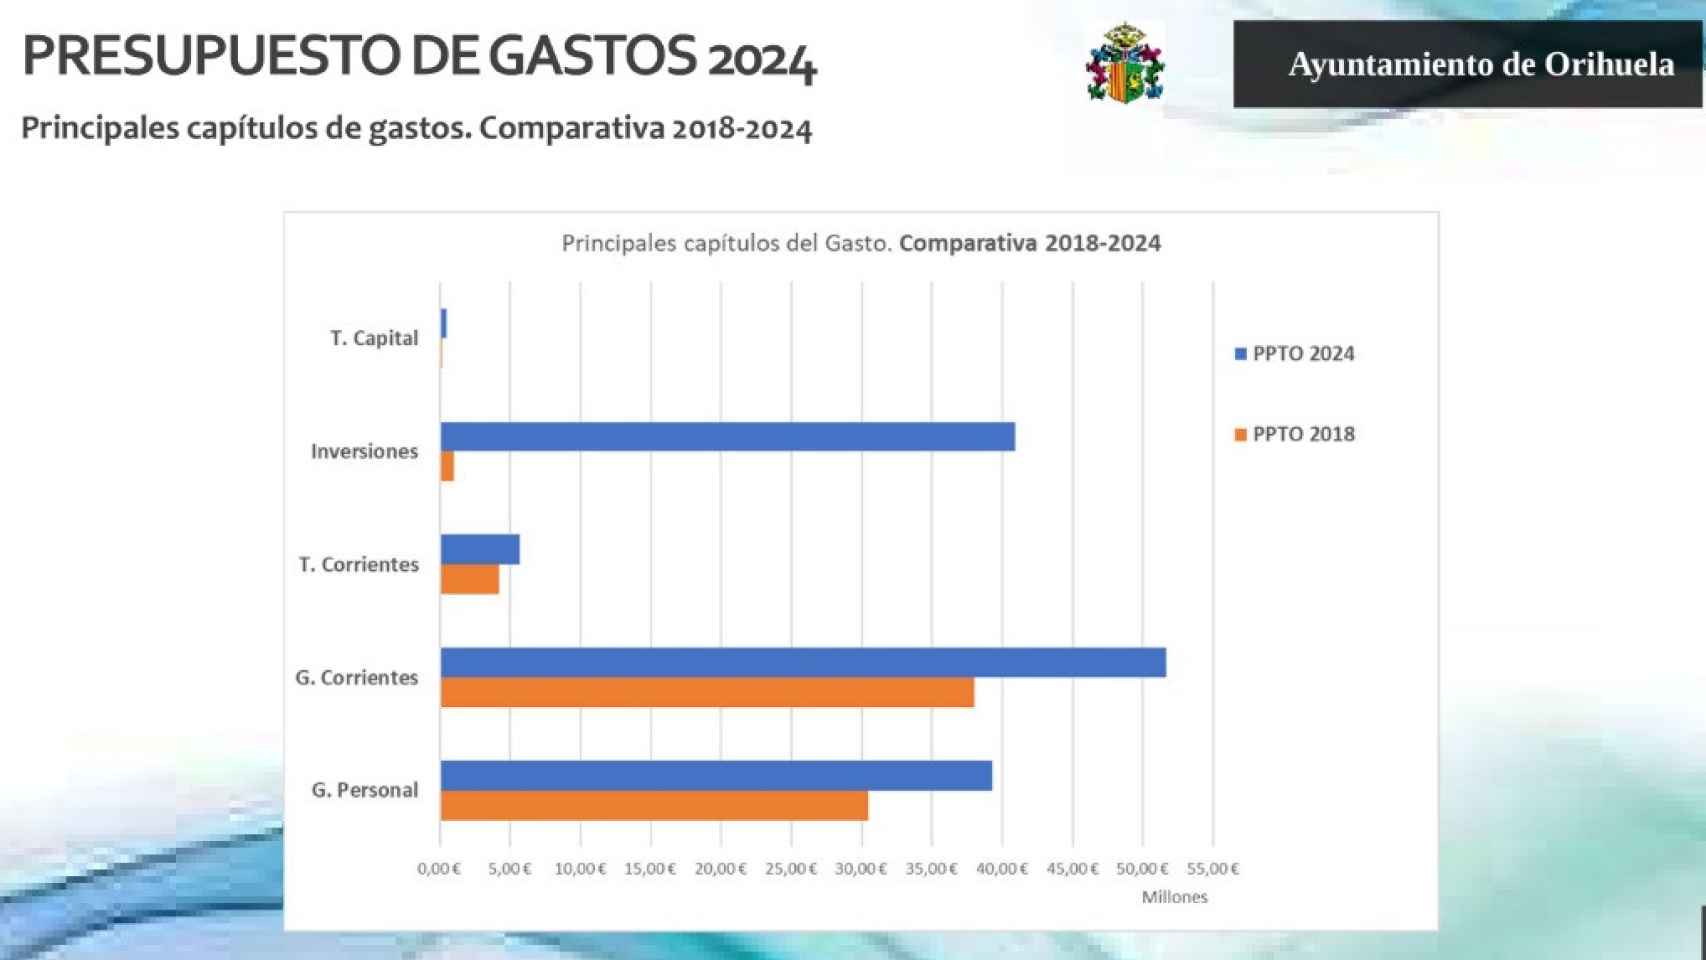 Comparativa del presupuesto de orihuela entre 2018 y 2024.